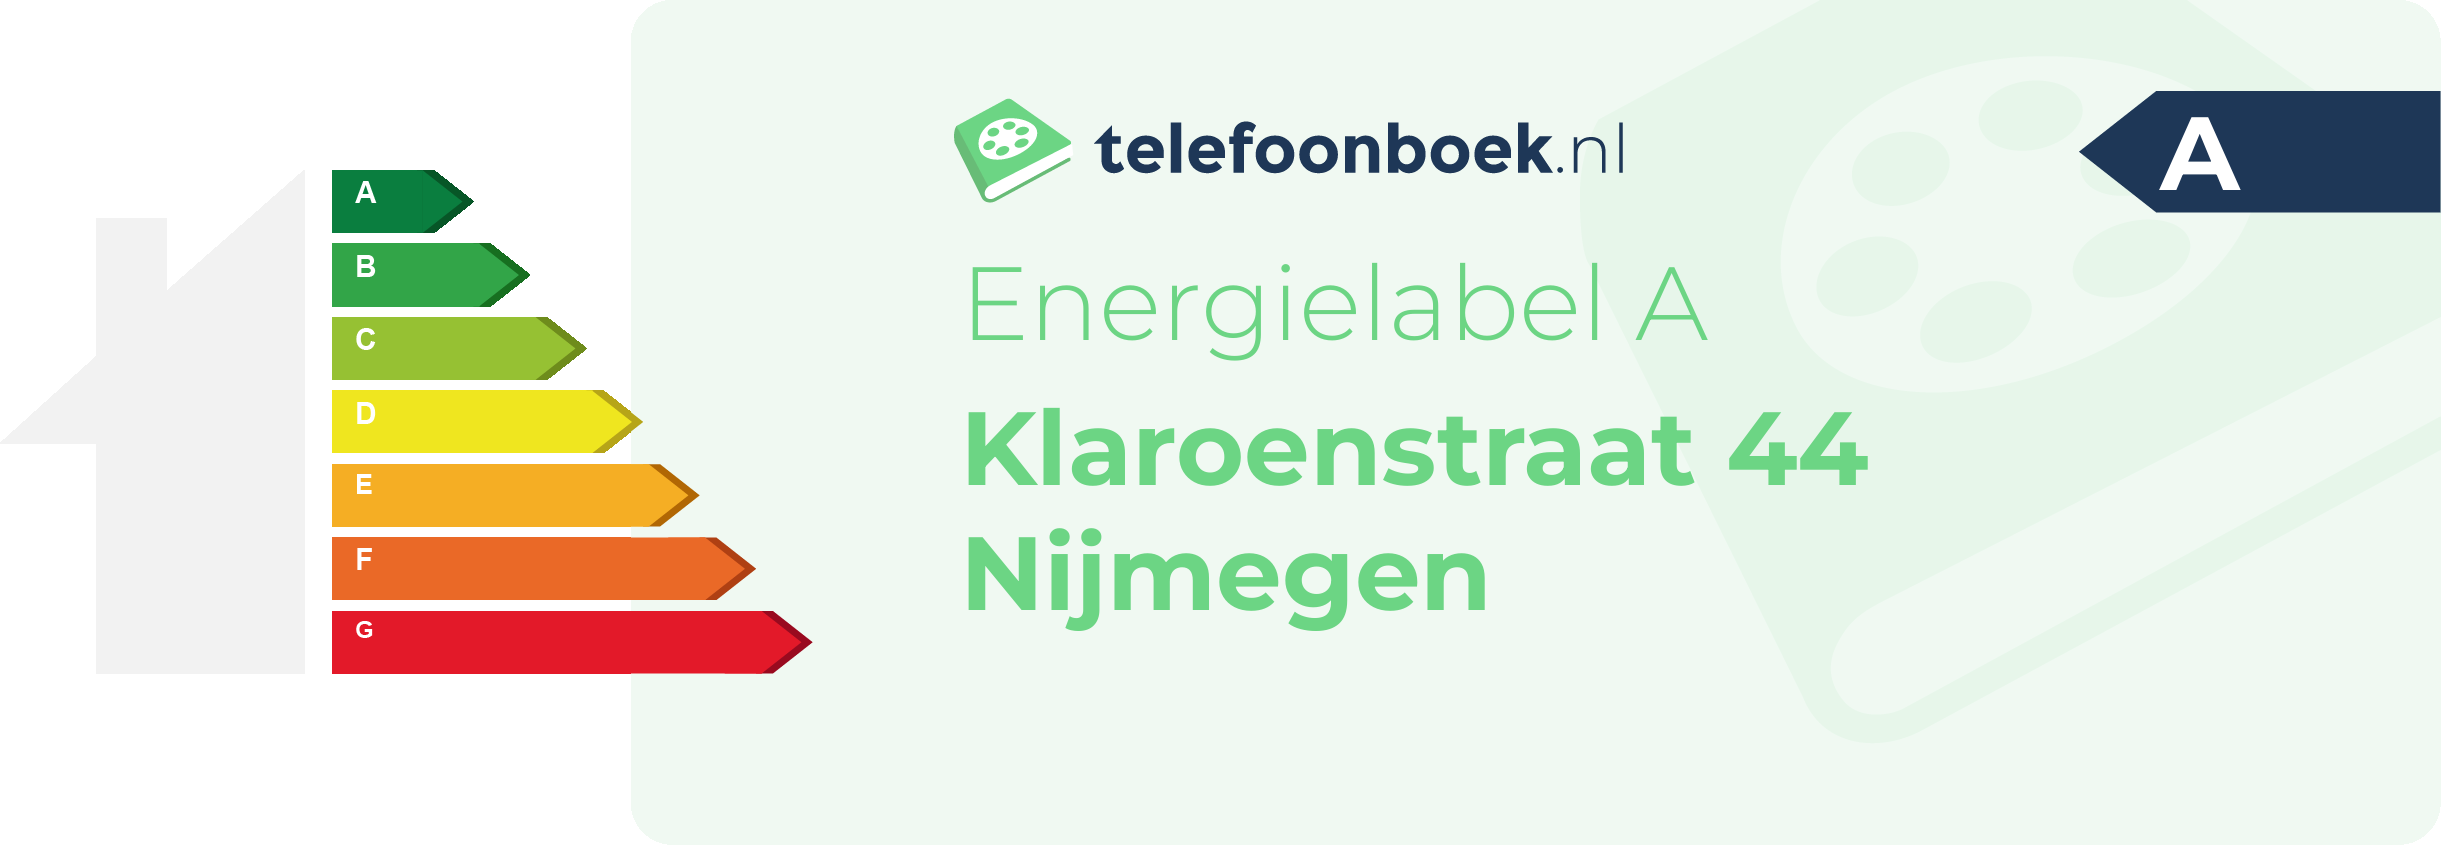 Energielabel Klaroenstraat 44 Nijmegen